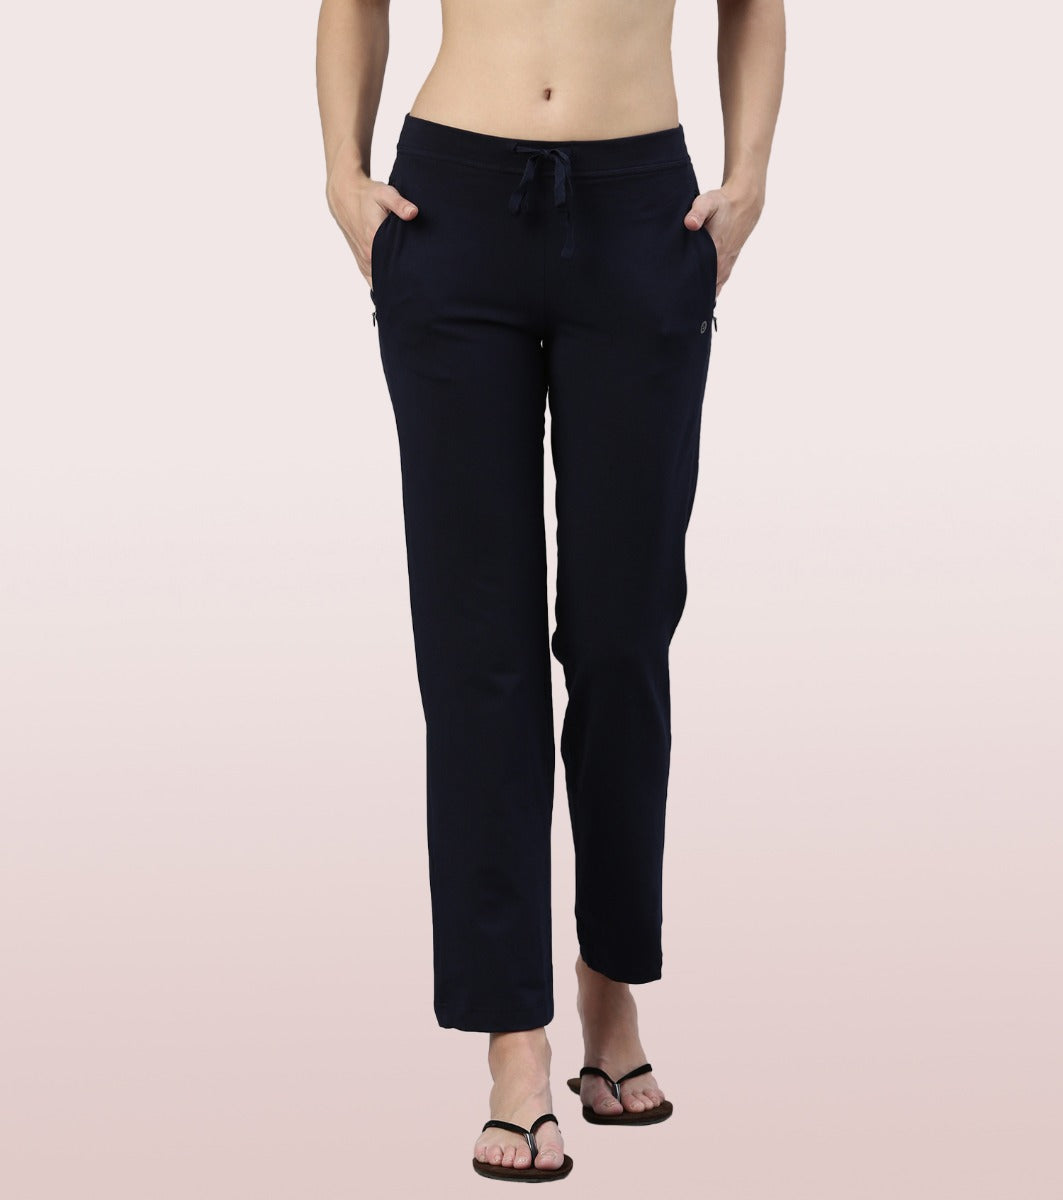 Buy Black  White Trousers  Pants for Women by TALLY WEiJL Online   Ajiocom